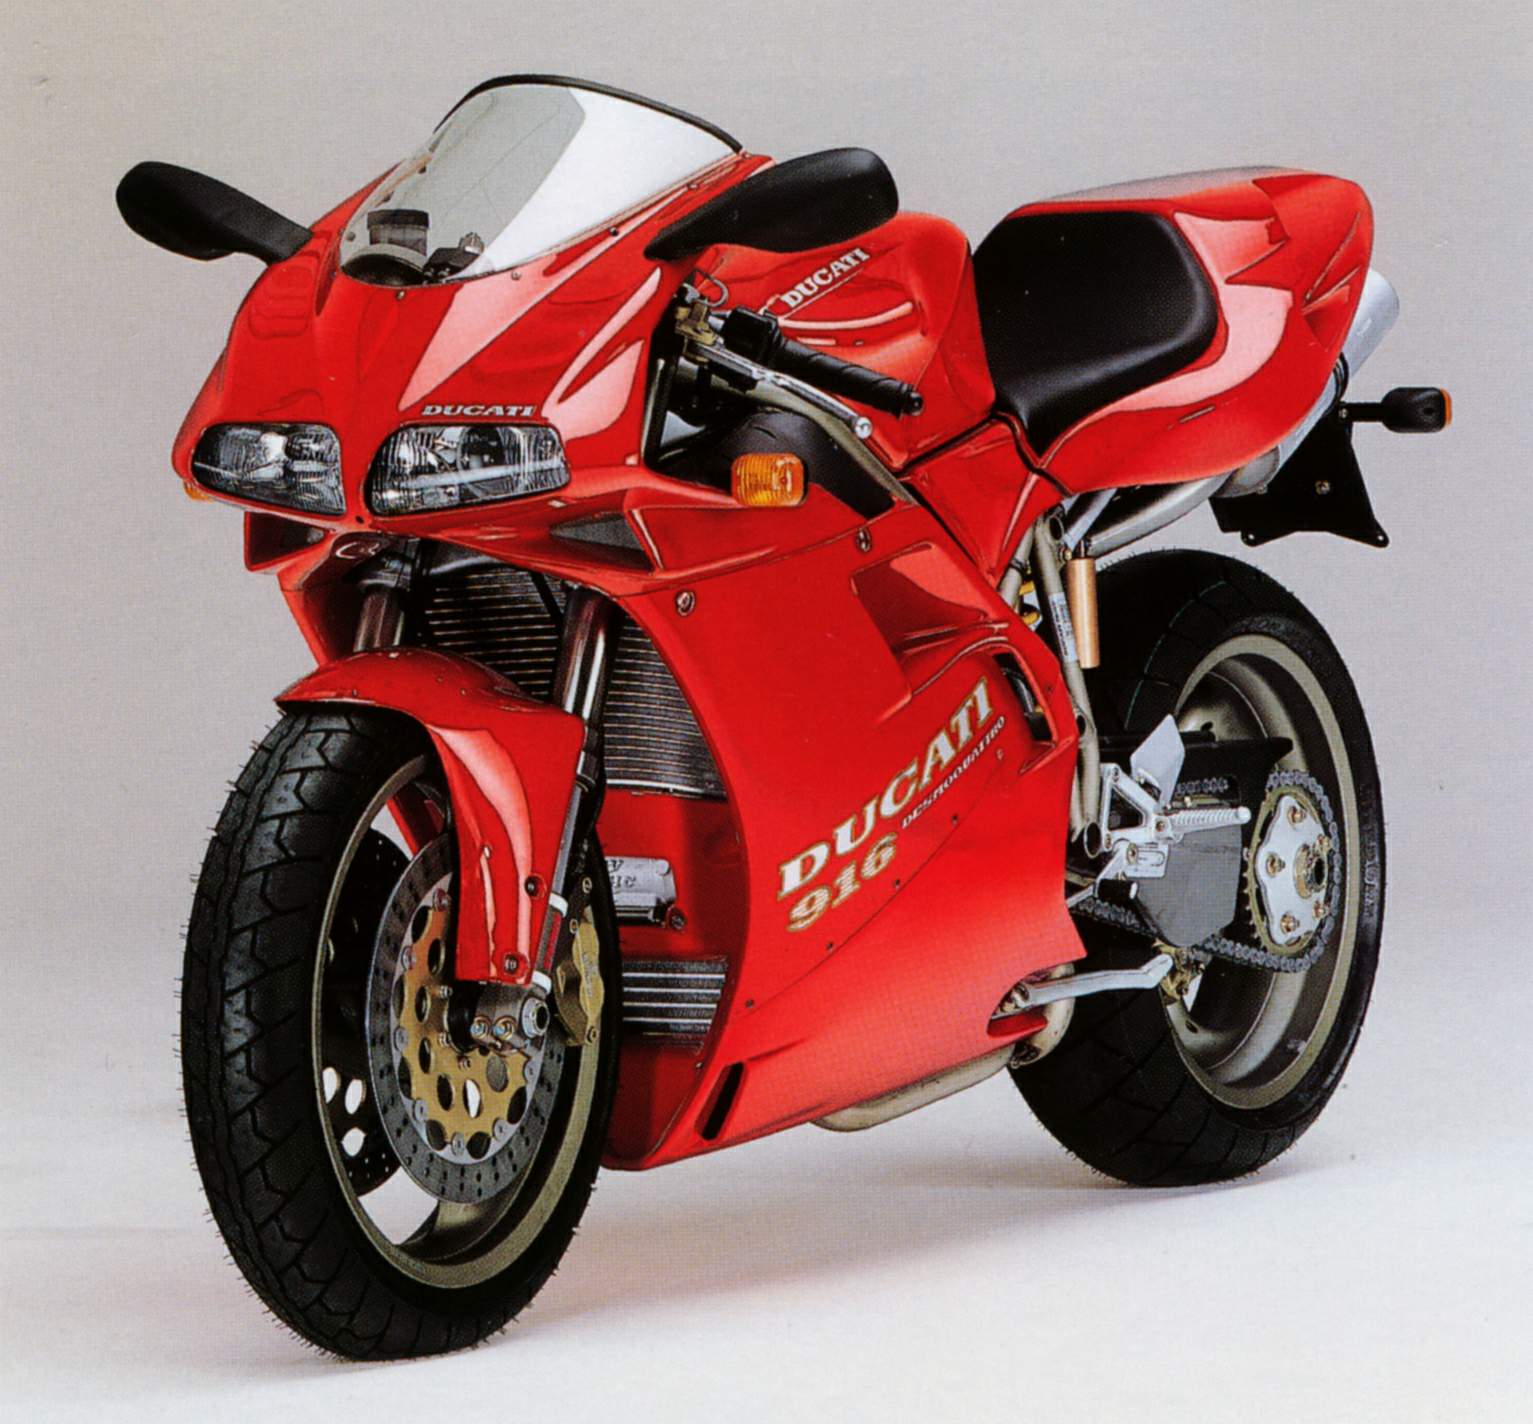 Ducati-916.jpg